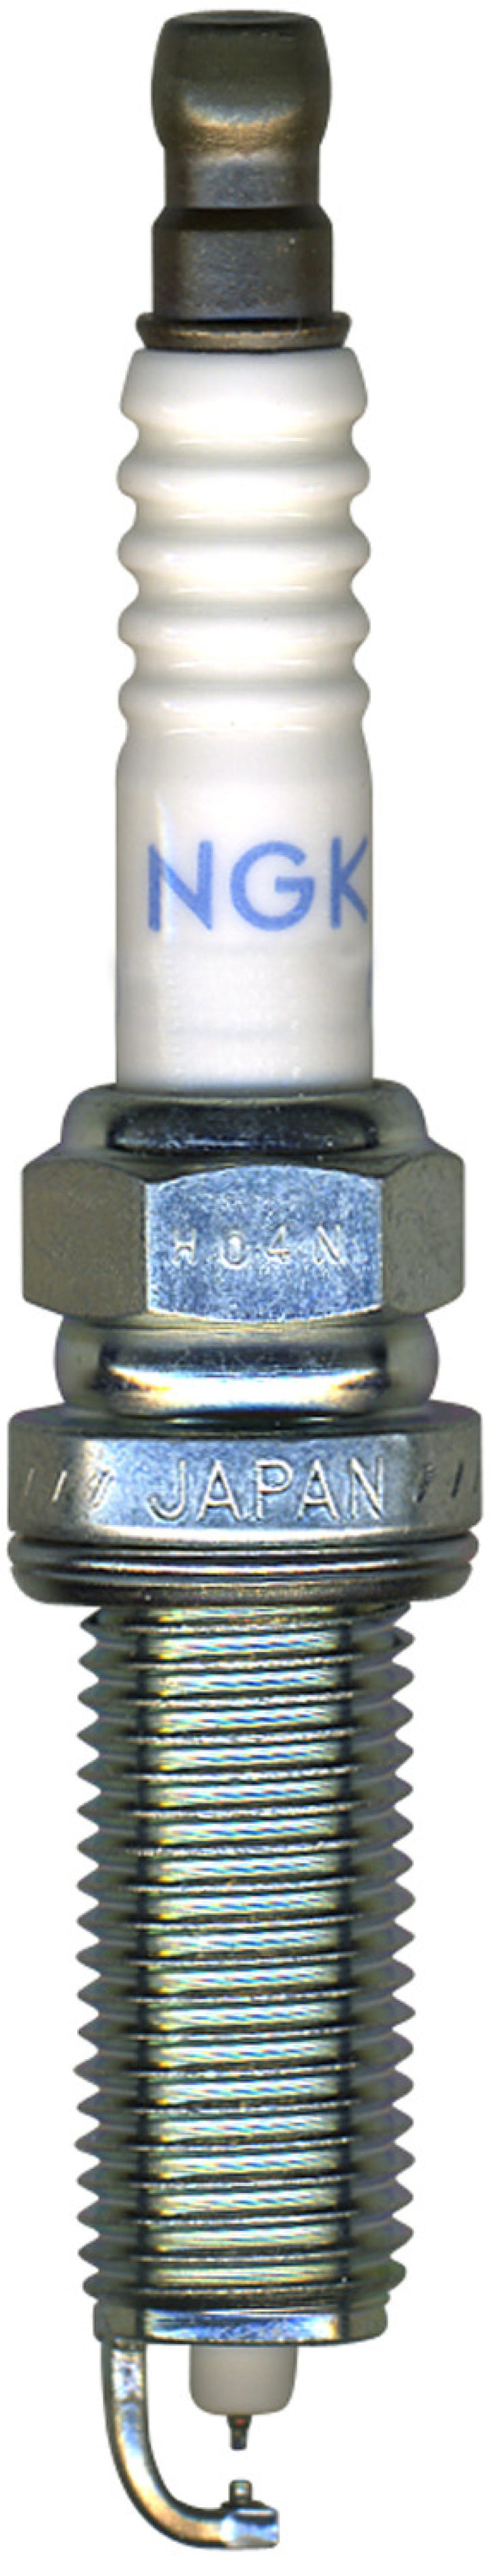 NGK Iridium/Platinum Spark Plug Box of 4 (DILKAR8A8).